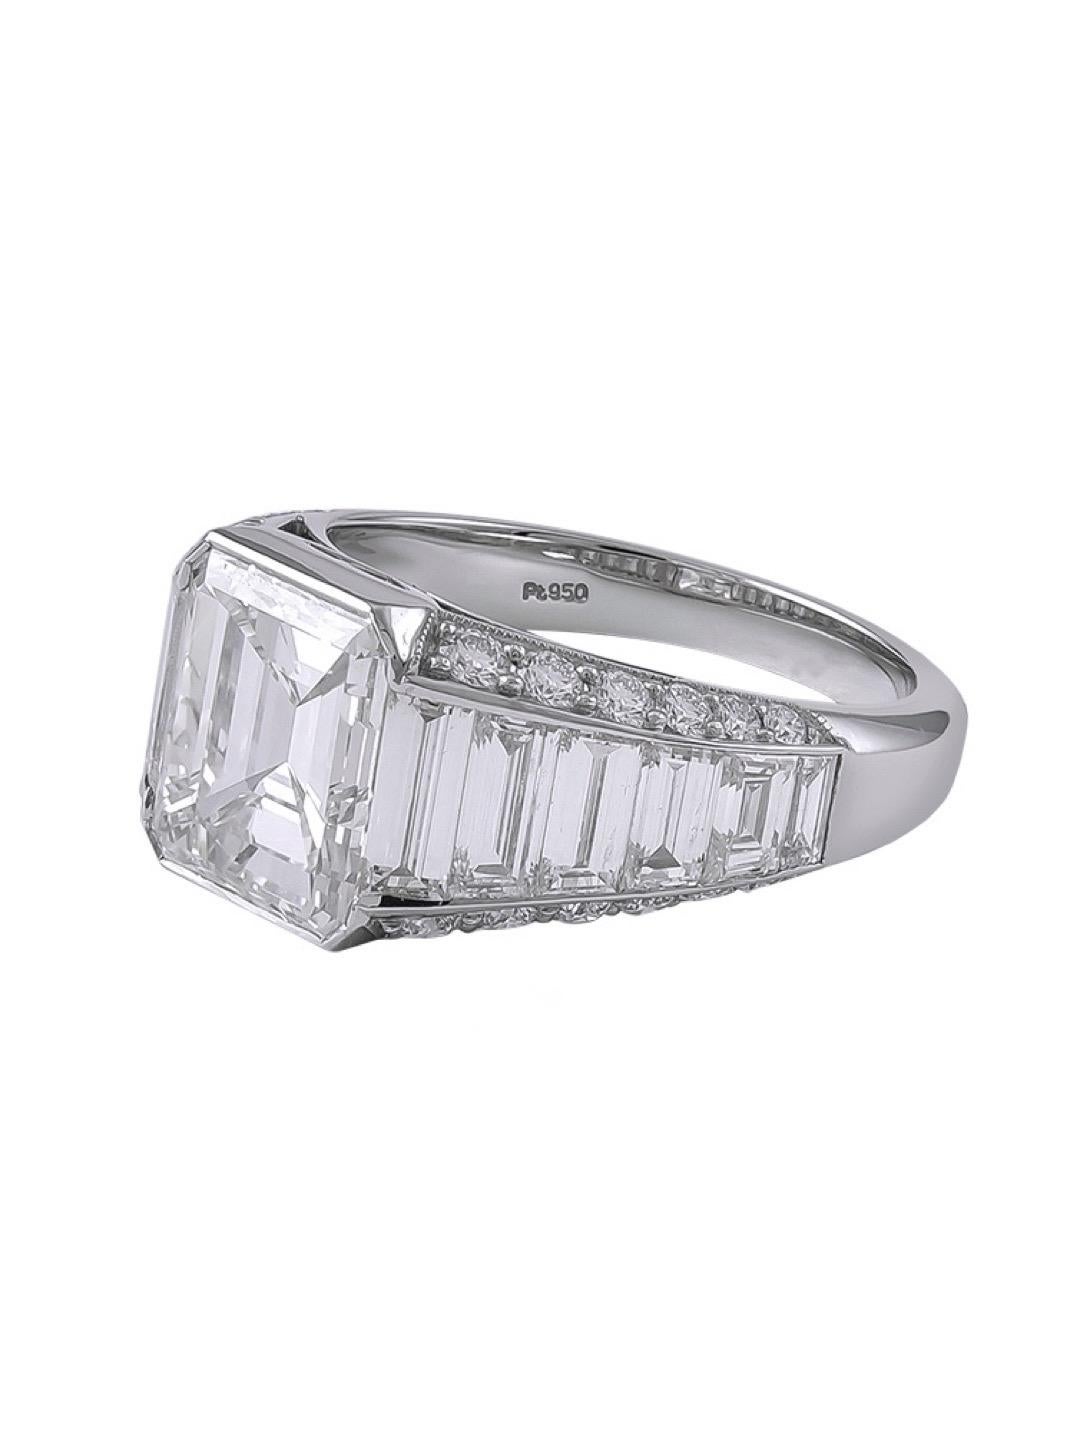 Une bague impeccable certifiée GIA de 3,01 carats de diamants taille émeraude avec une couleur et une clarté de I-VVS2 avec 2,16 carats de diamants taille baguette et 0,47 carat de petits diamants. 

Disponible pour le redimensionnement.

Sophia D